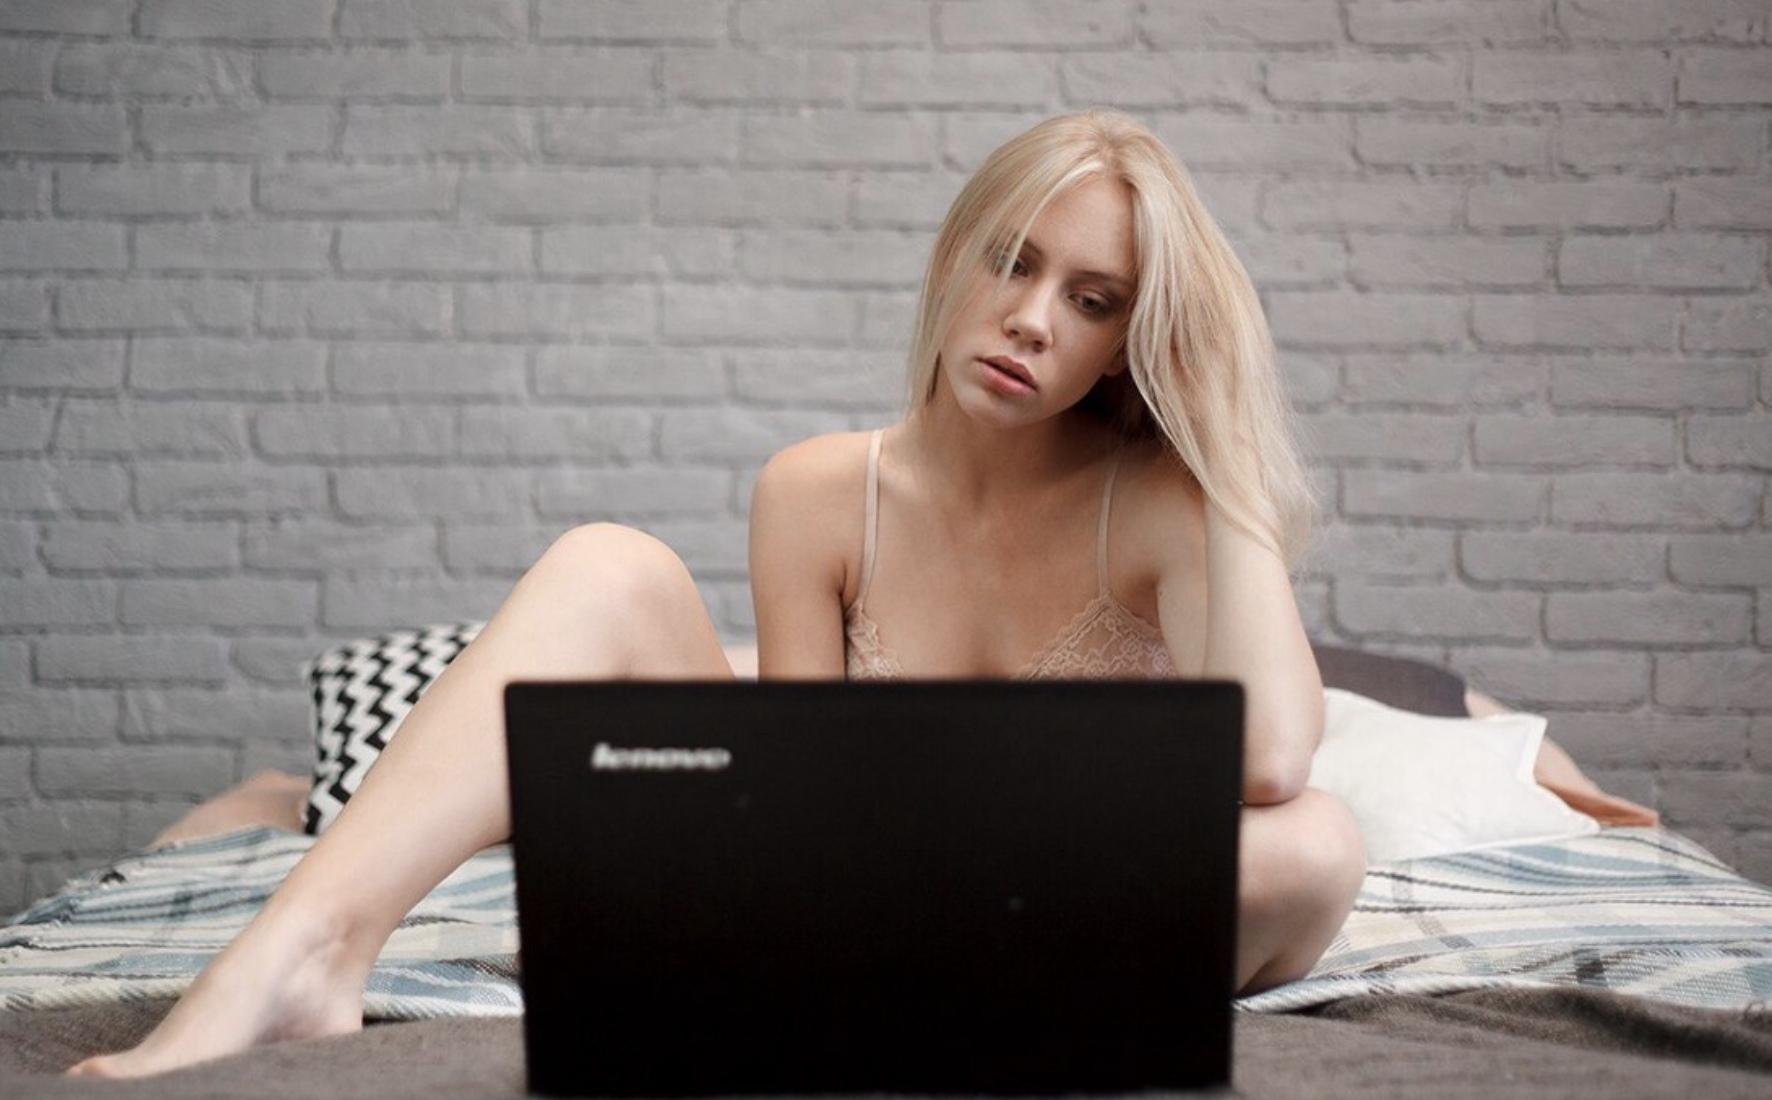 Юные перед камерой. Девушка перед ноутбуком. Блондинка с ноутбуком. Блондинка за ноутбуком. Девушка вебкам модель.